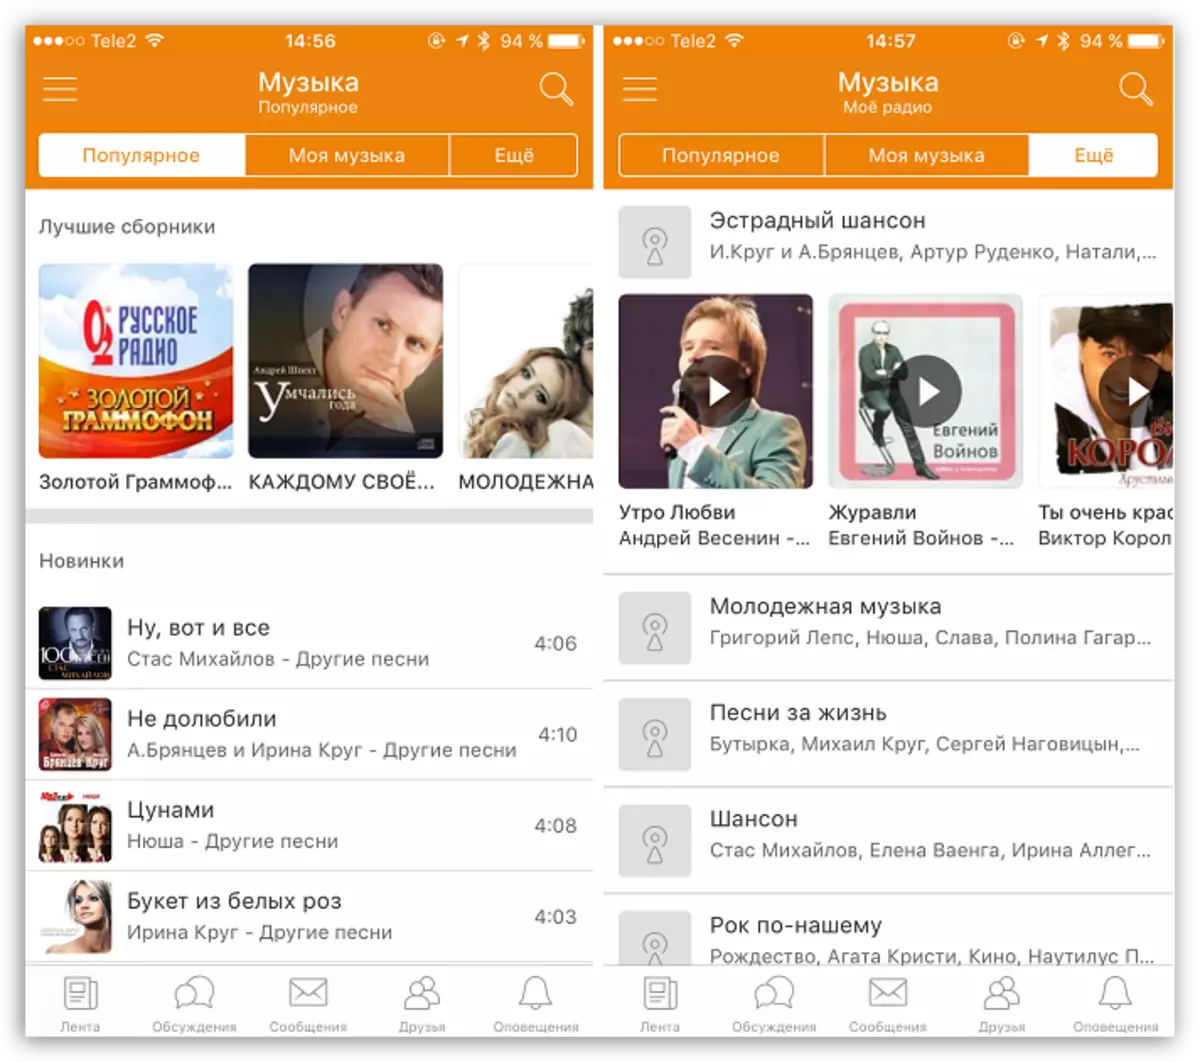 iOS အတွက်အက်ပလီကေးရှင်းအတန်းဖော်များတွင်တေးဂီတ